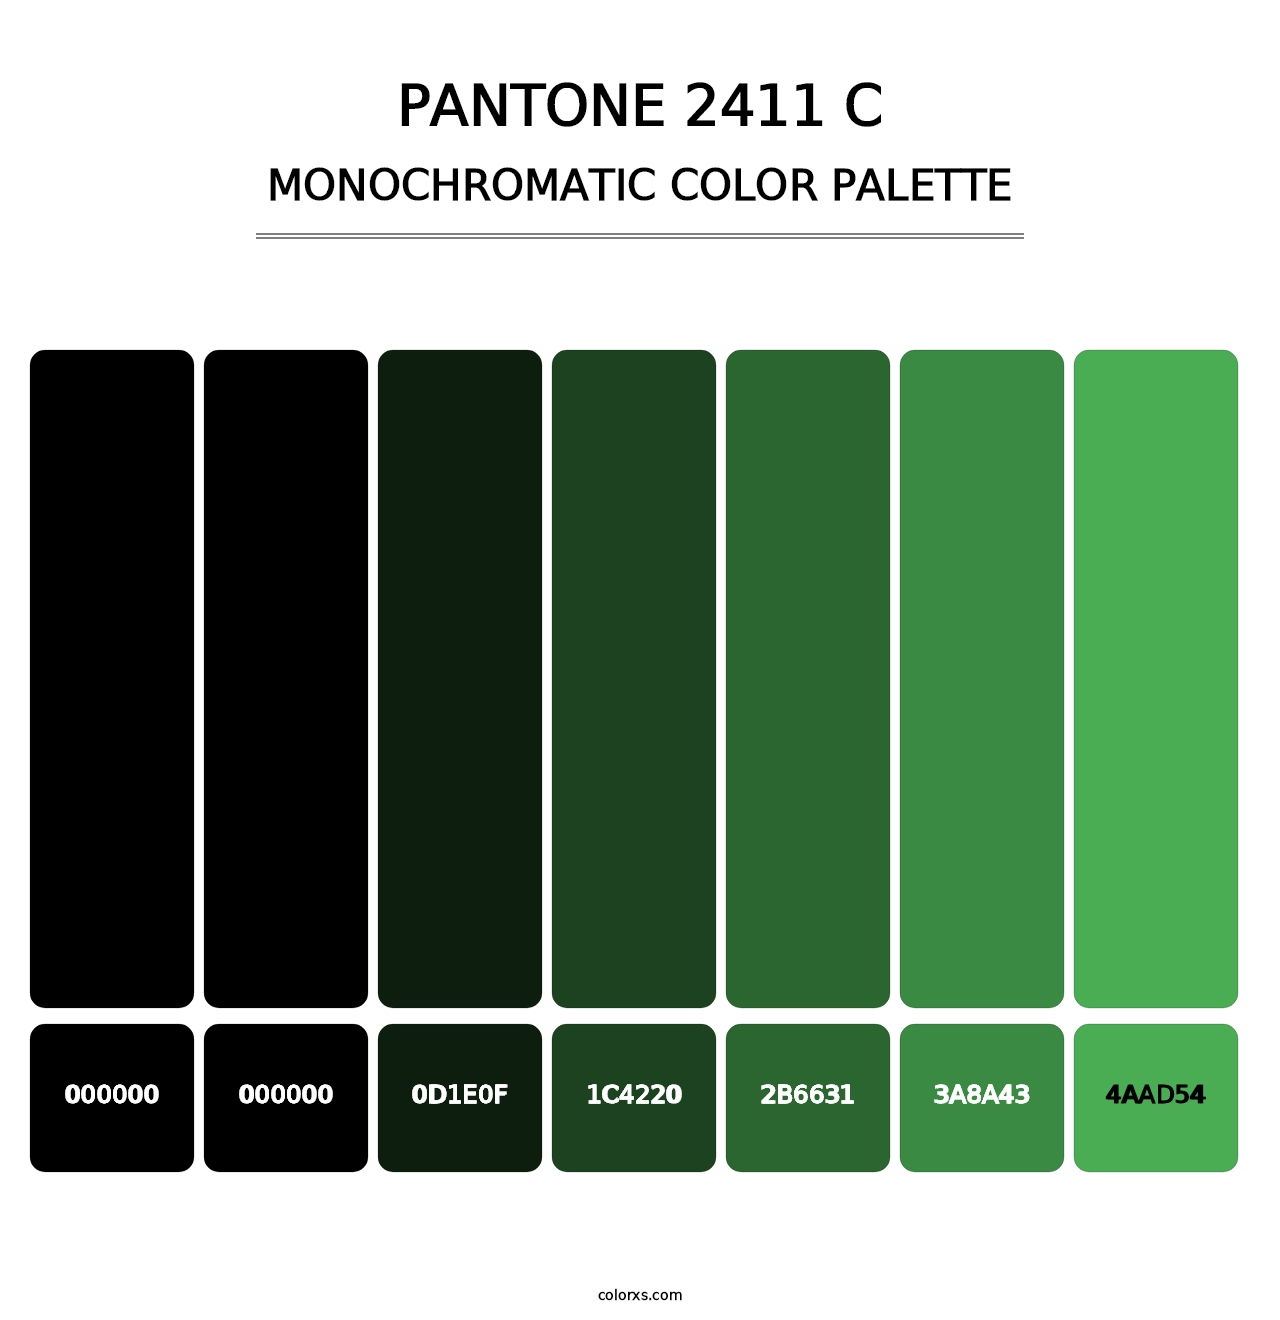 PANTONE 2411 C - Monochromatic Color Palette